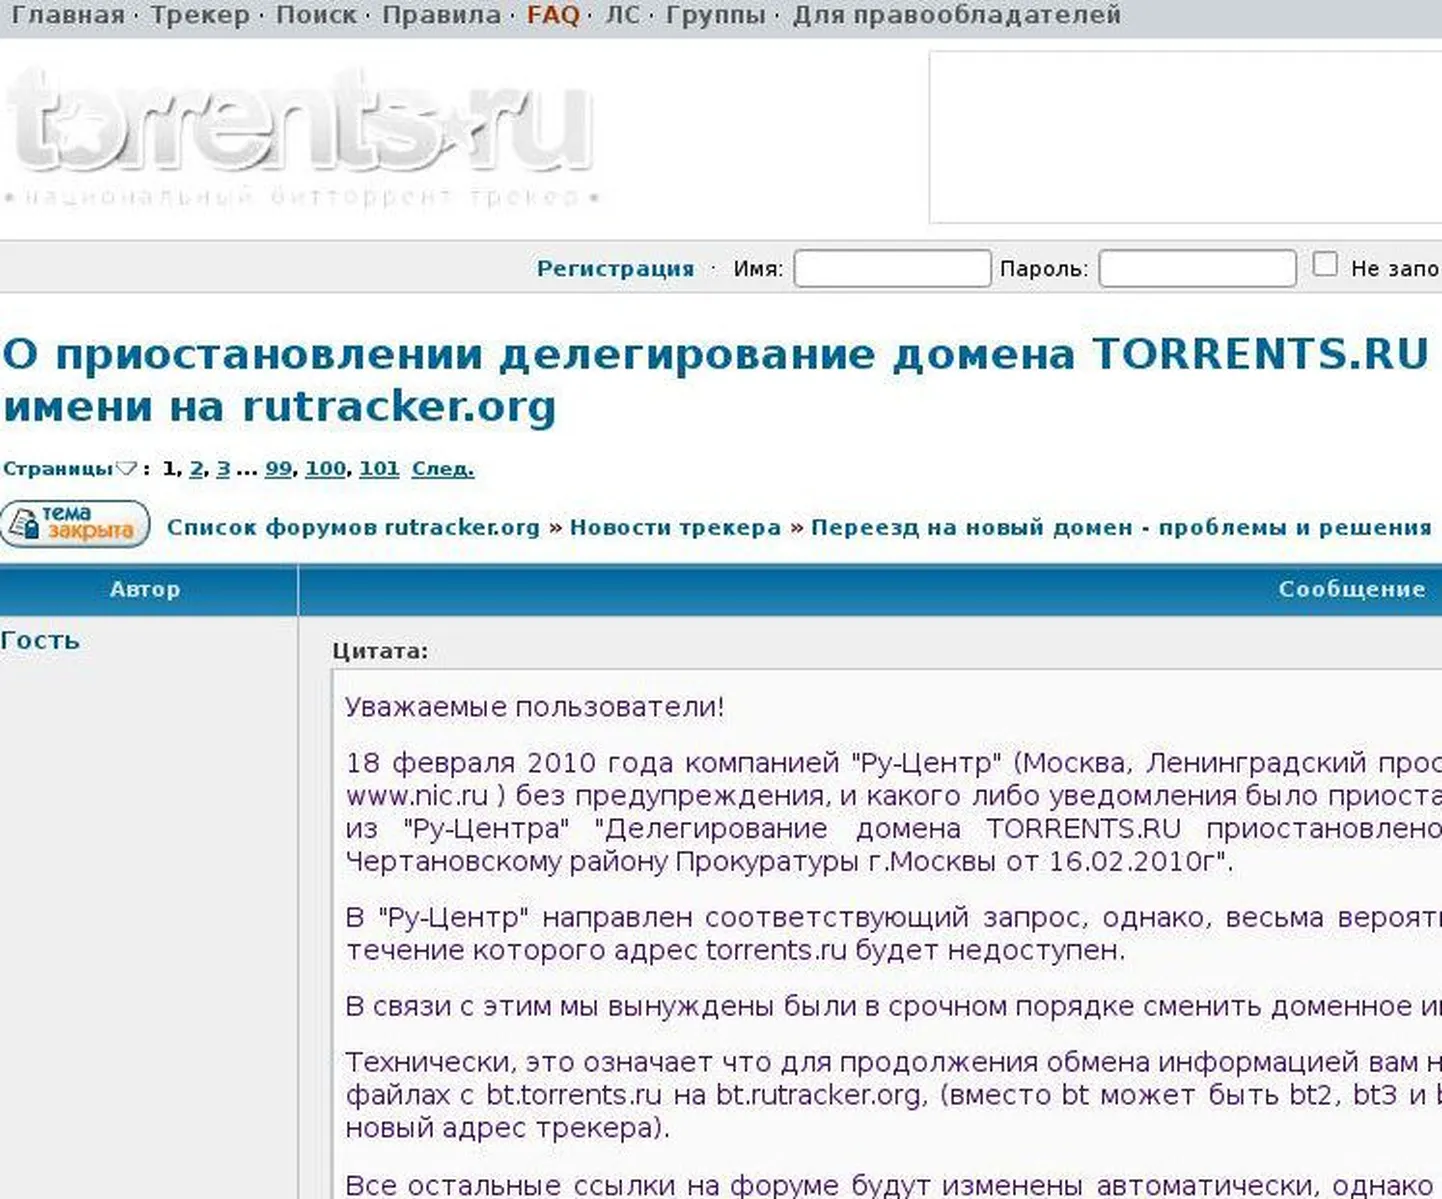 Объявление о смене адреса на сайте torrents.ru